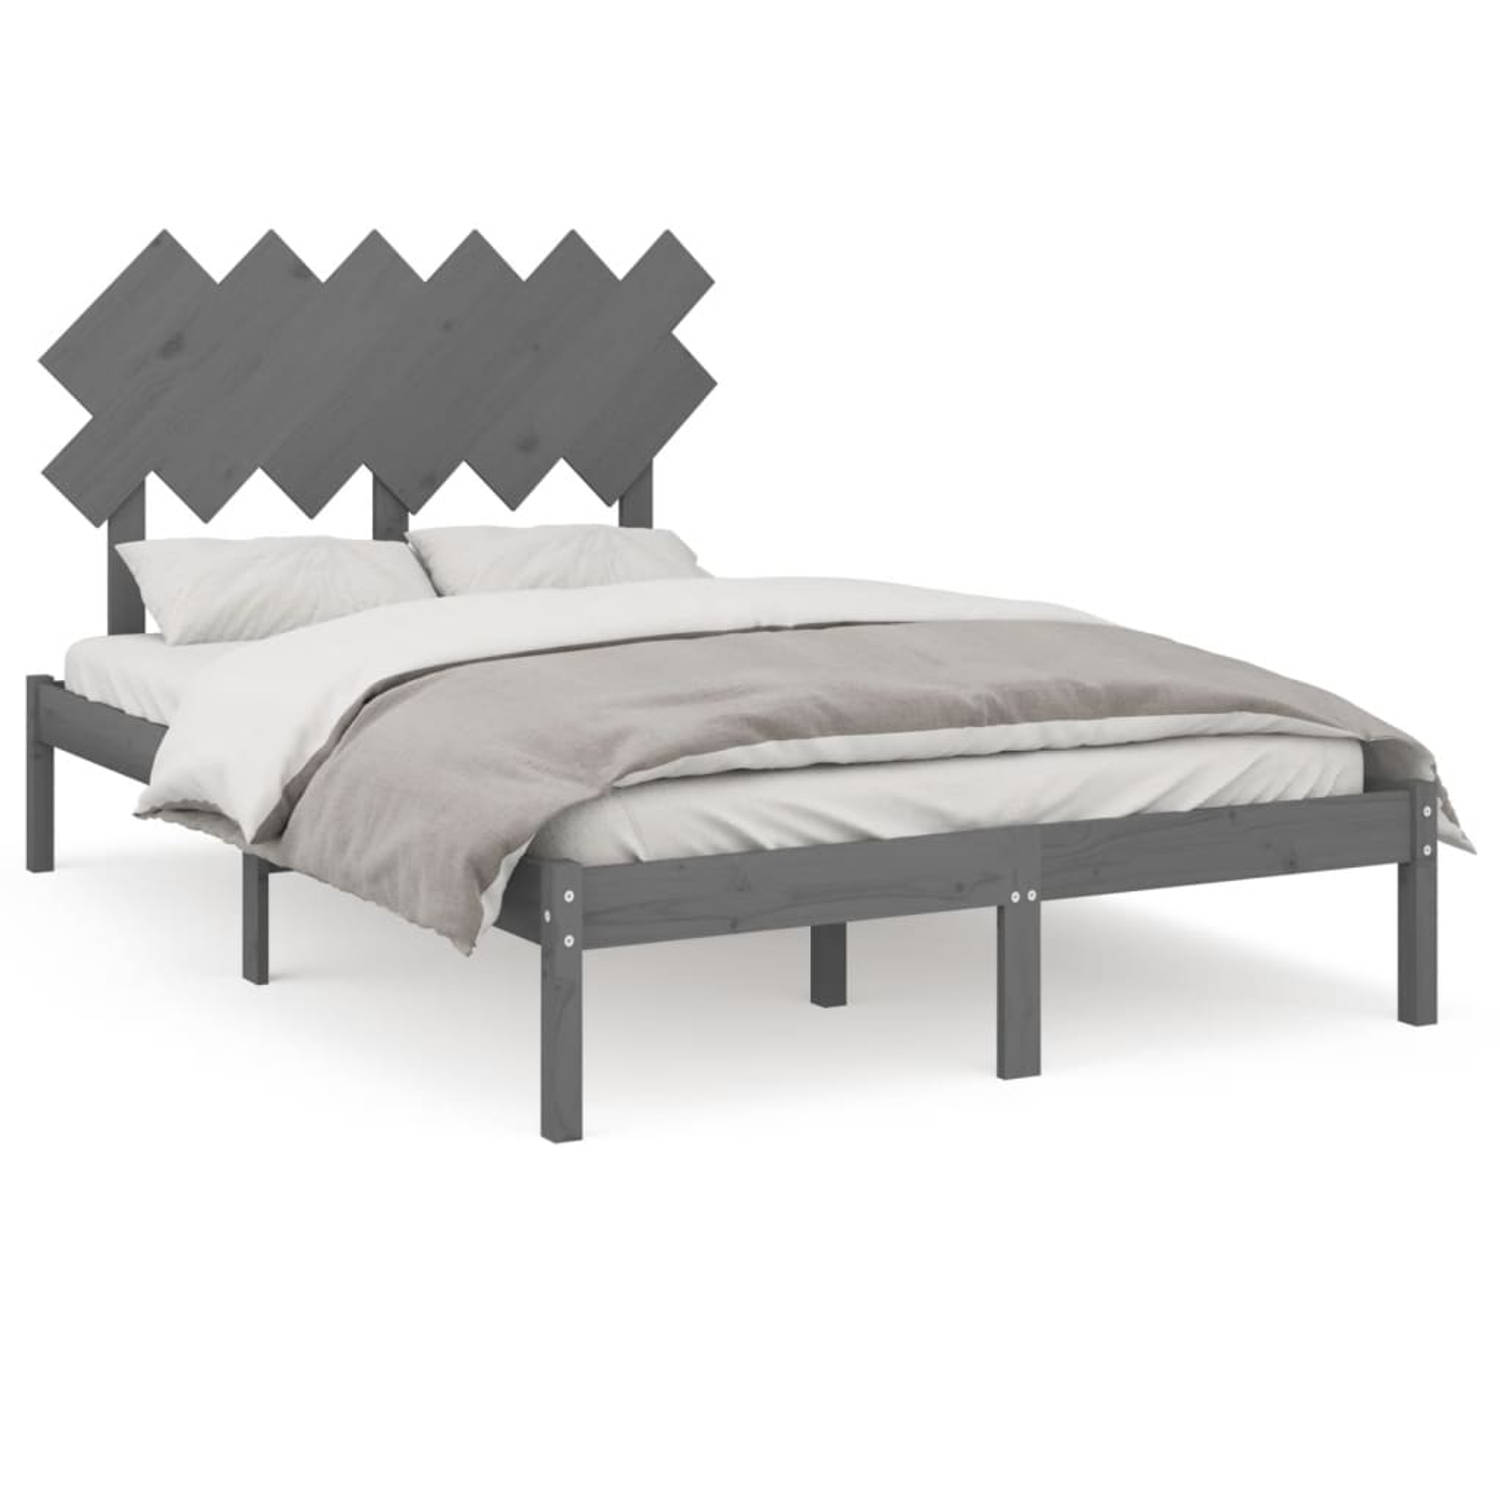 The Living Store Bedframe massief hout grijs 120x200 cm - Bedframe - Bedframes - Bed - Bedbodem - Ledikant - Bed Frame - Massief Houten Bedframe - Slaapmeubel - Tweepersoonsbed - B